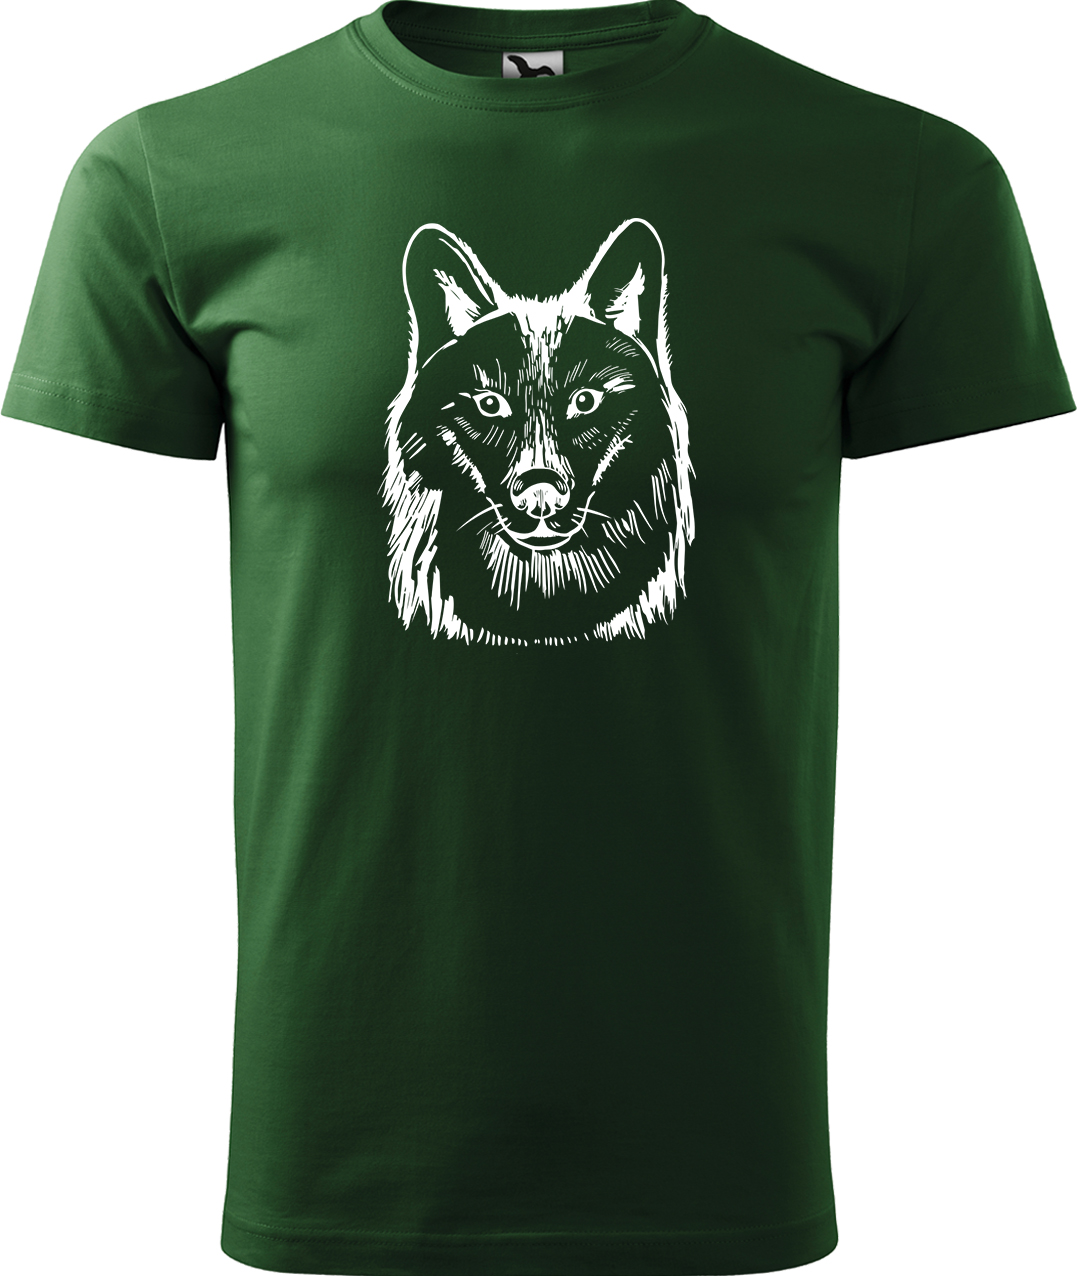 Pánské tričko s vlkem - Kresba vlka Velikost: L, Barva: Lahvově zelená (06), Střih: pánský